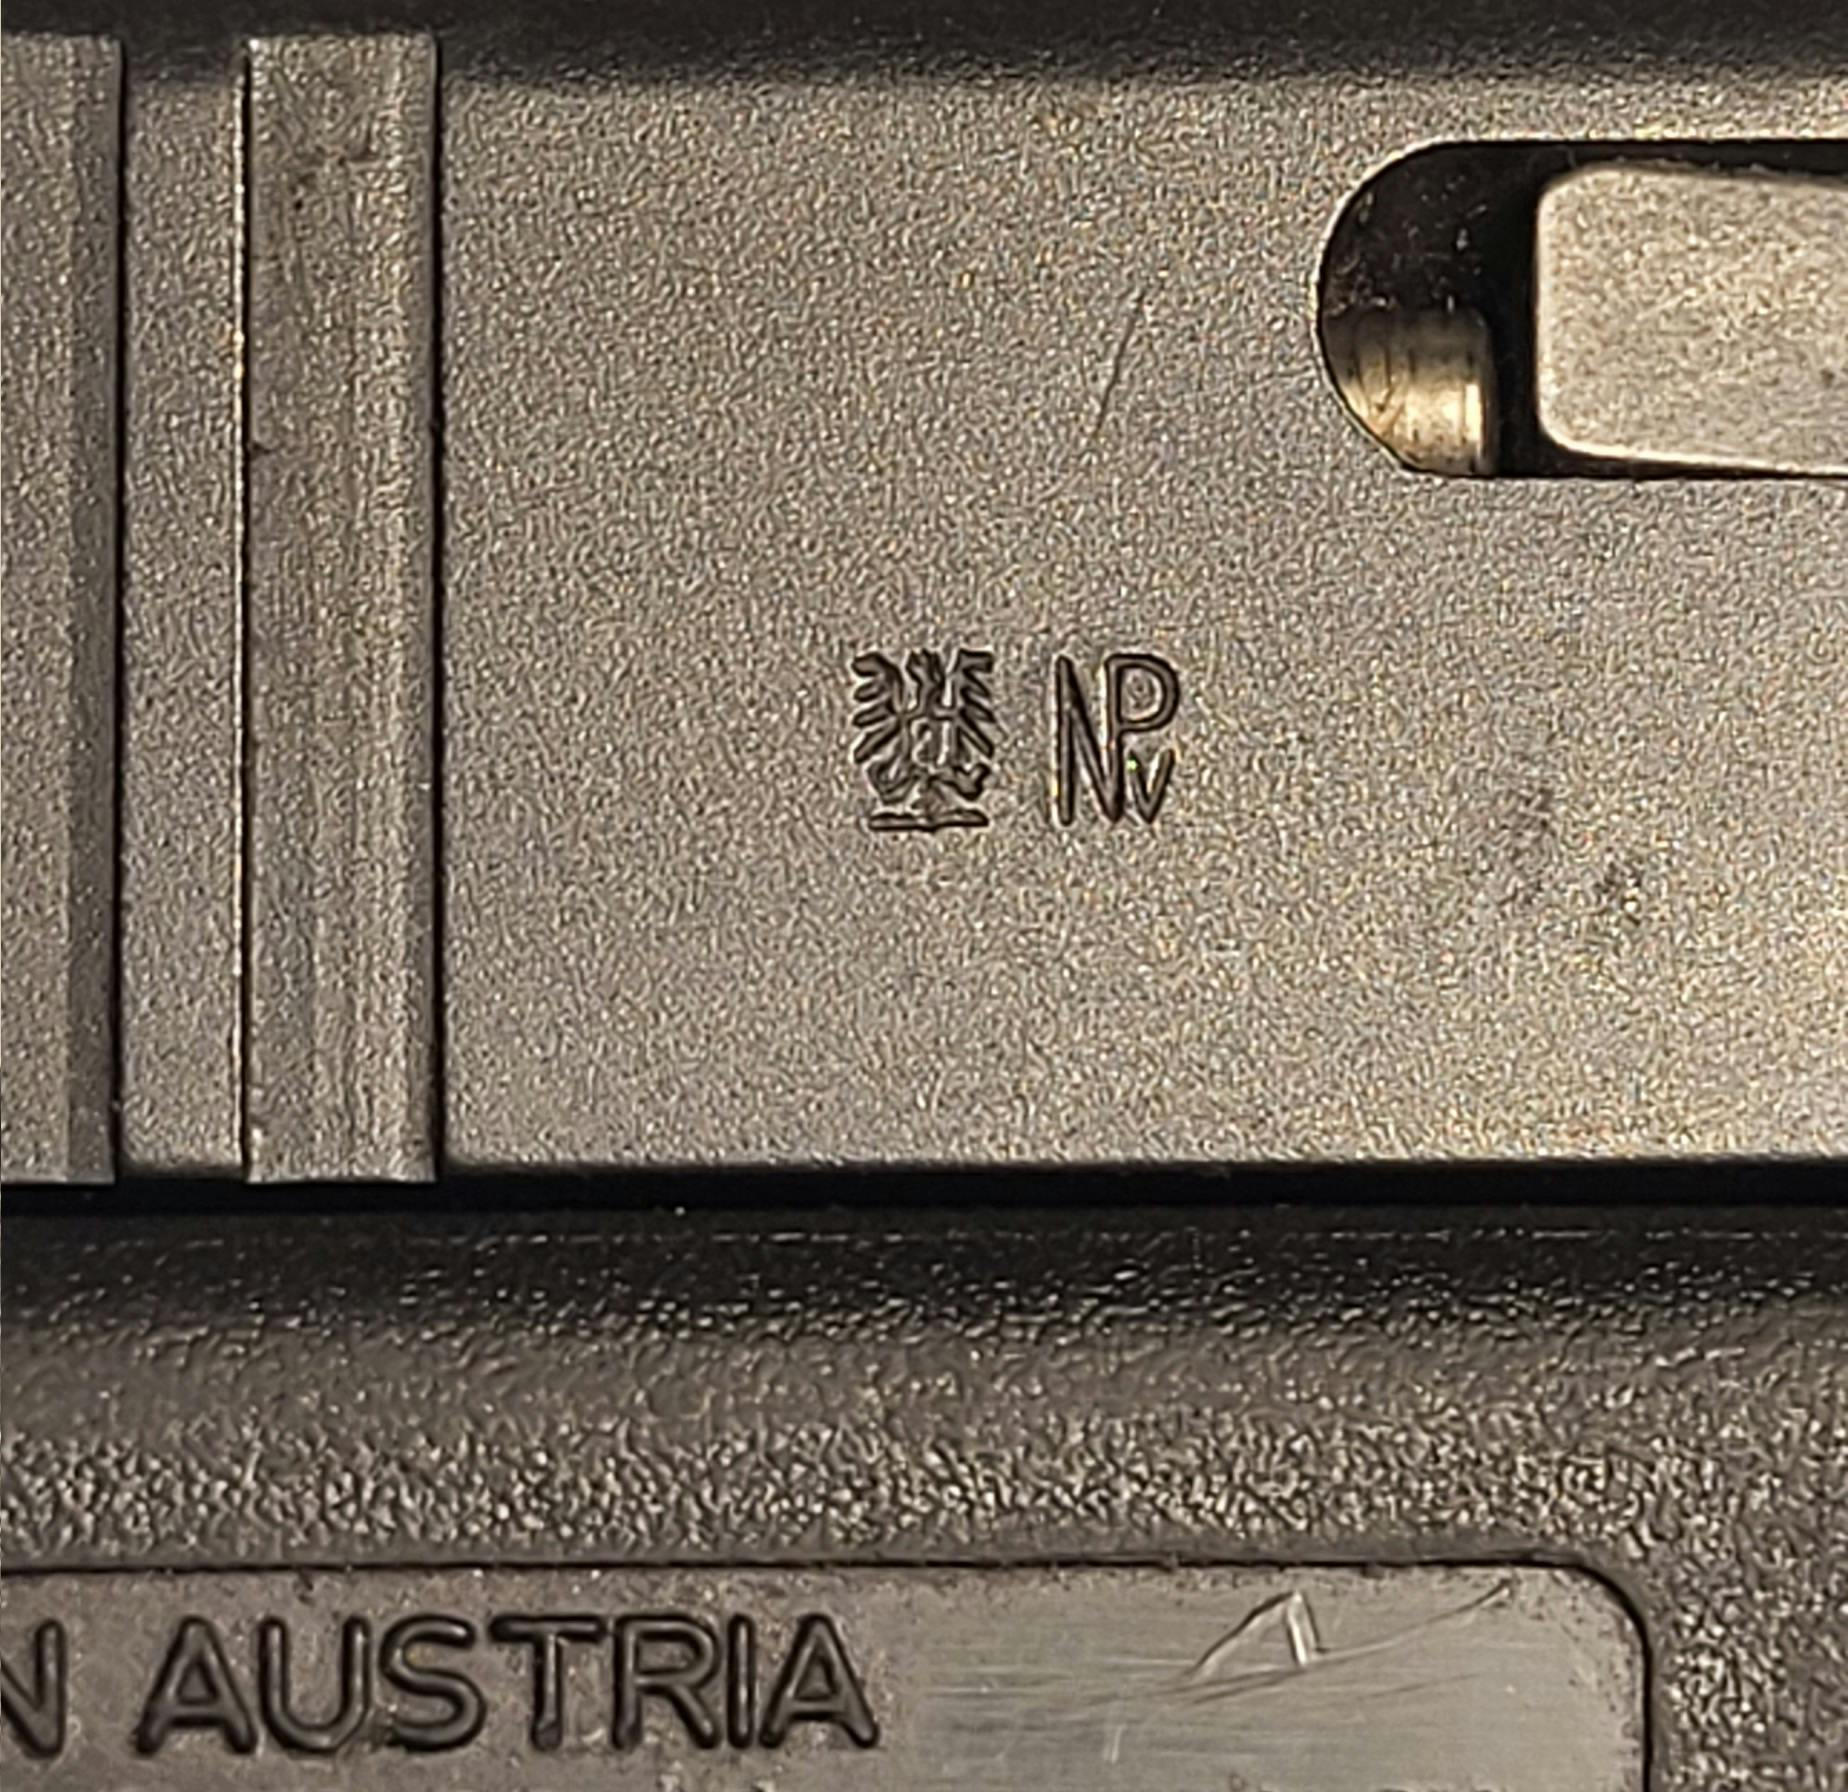 Beschussstempel einer Glock 17 Gen 3 hinter dem Auswurffenster: Staatlicher Beschussstempel Österreich und Stempel für Parabellumpistolen mit rauchlosem Pulver. Zugelassen!